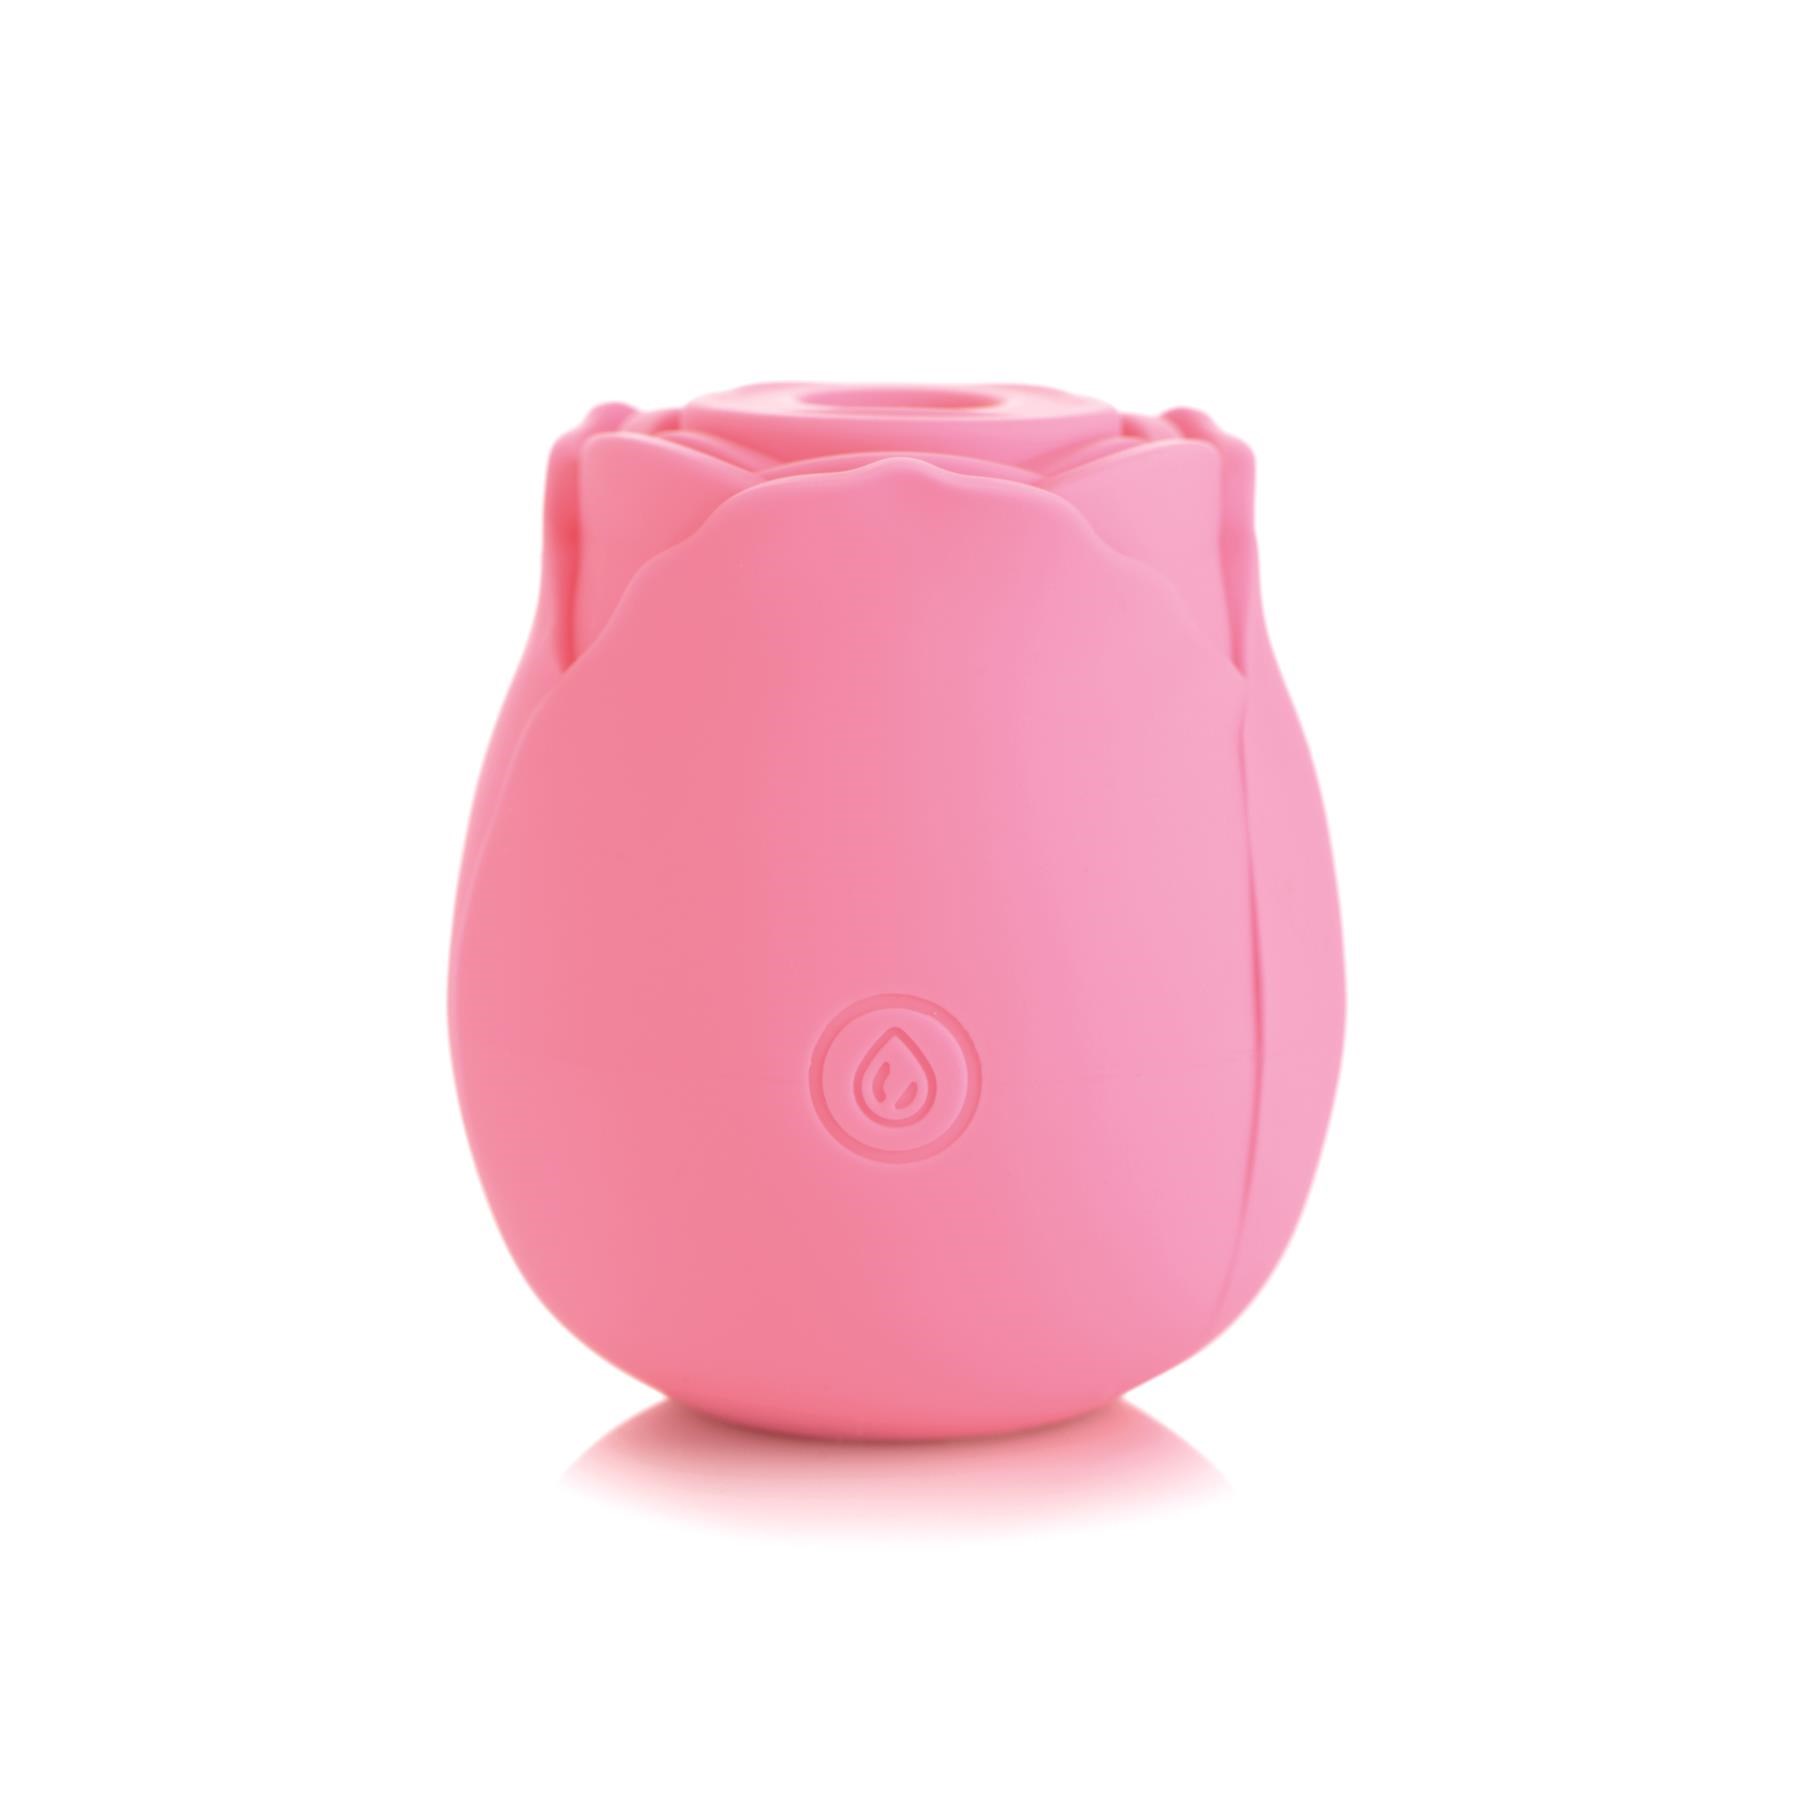 Bloomgasm Suction Rose Clitoral Stimulator - Back - Pink